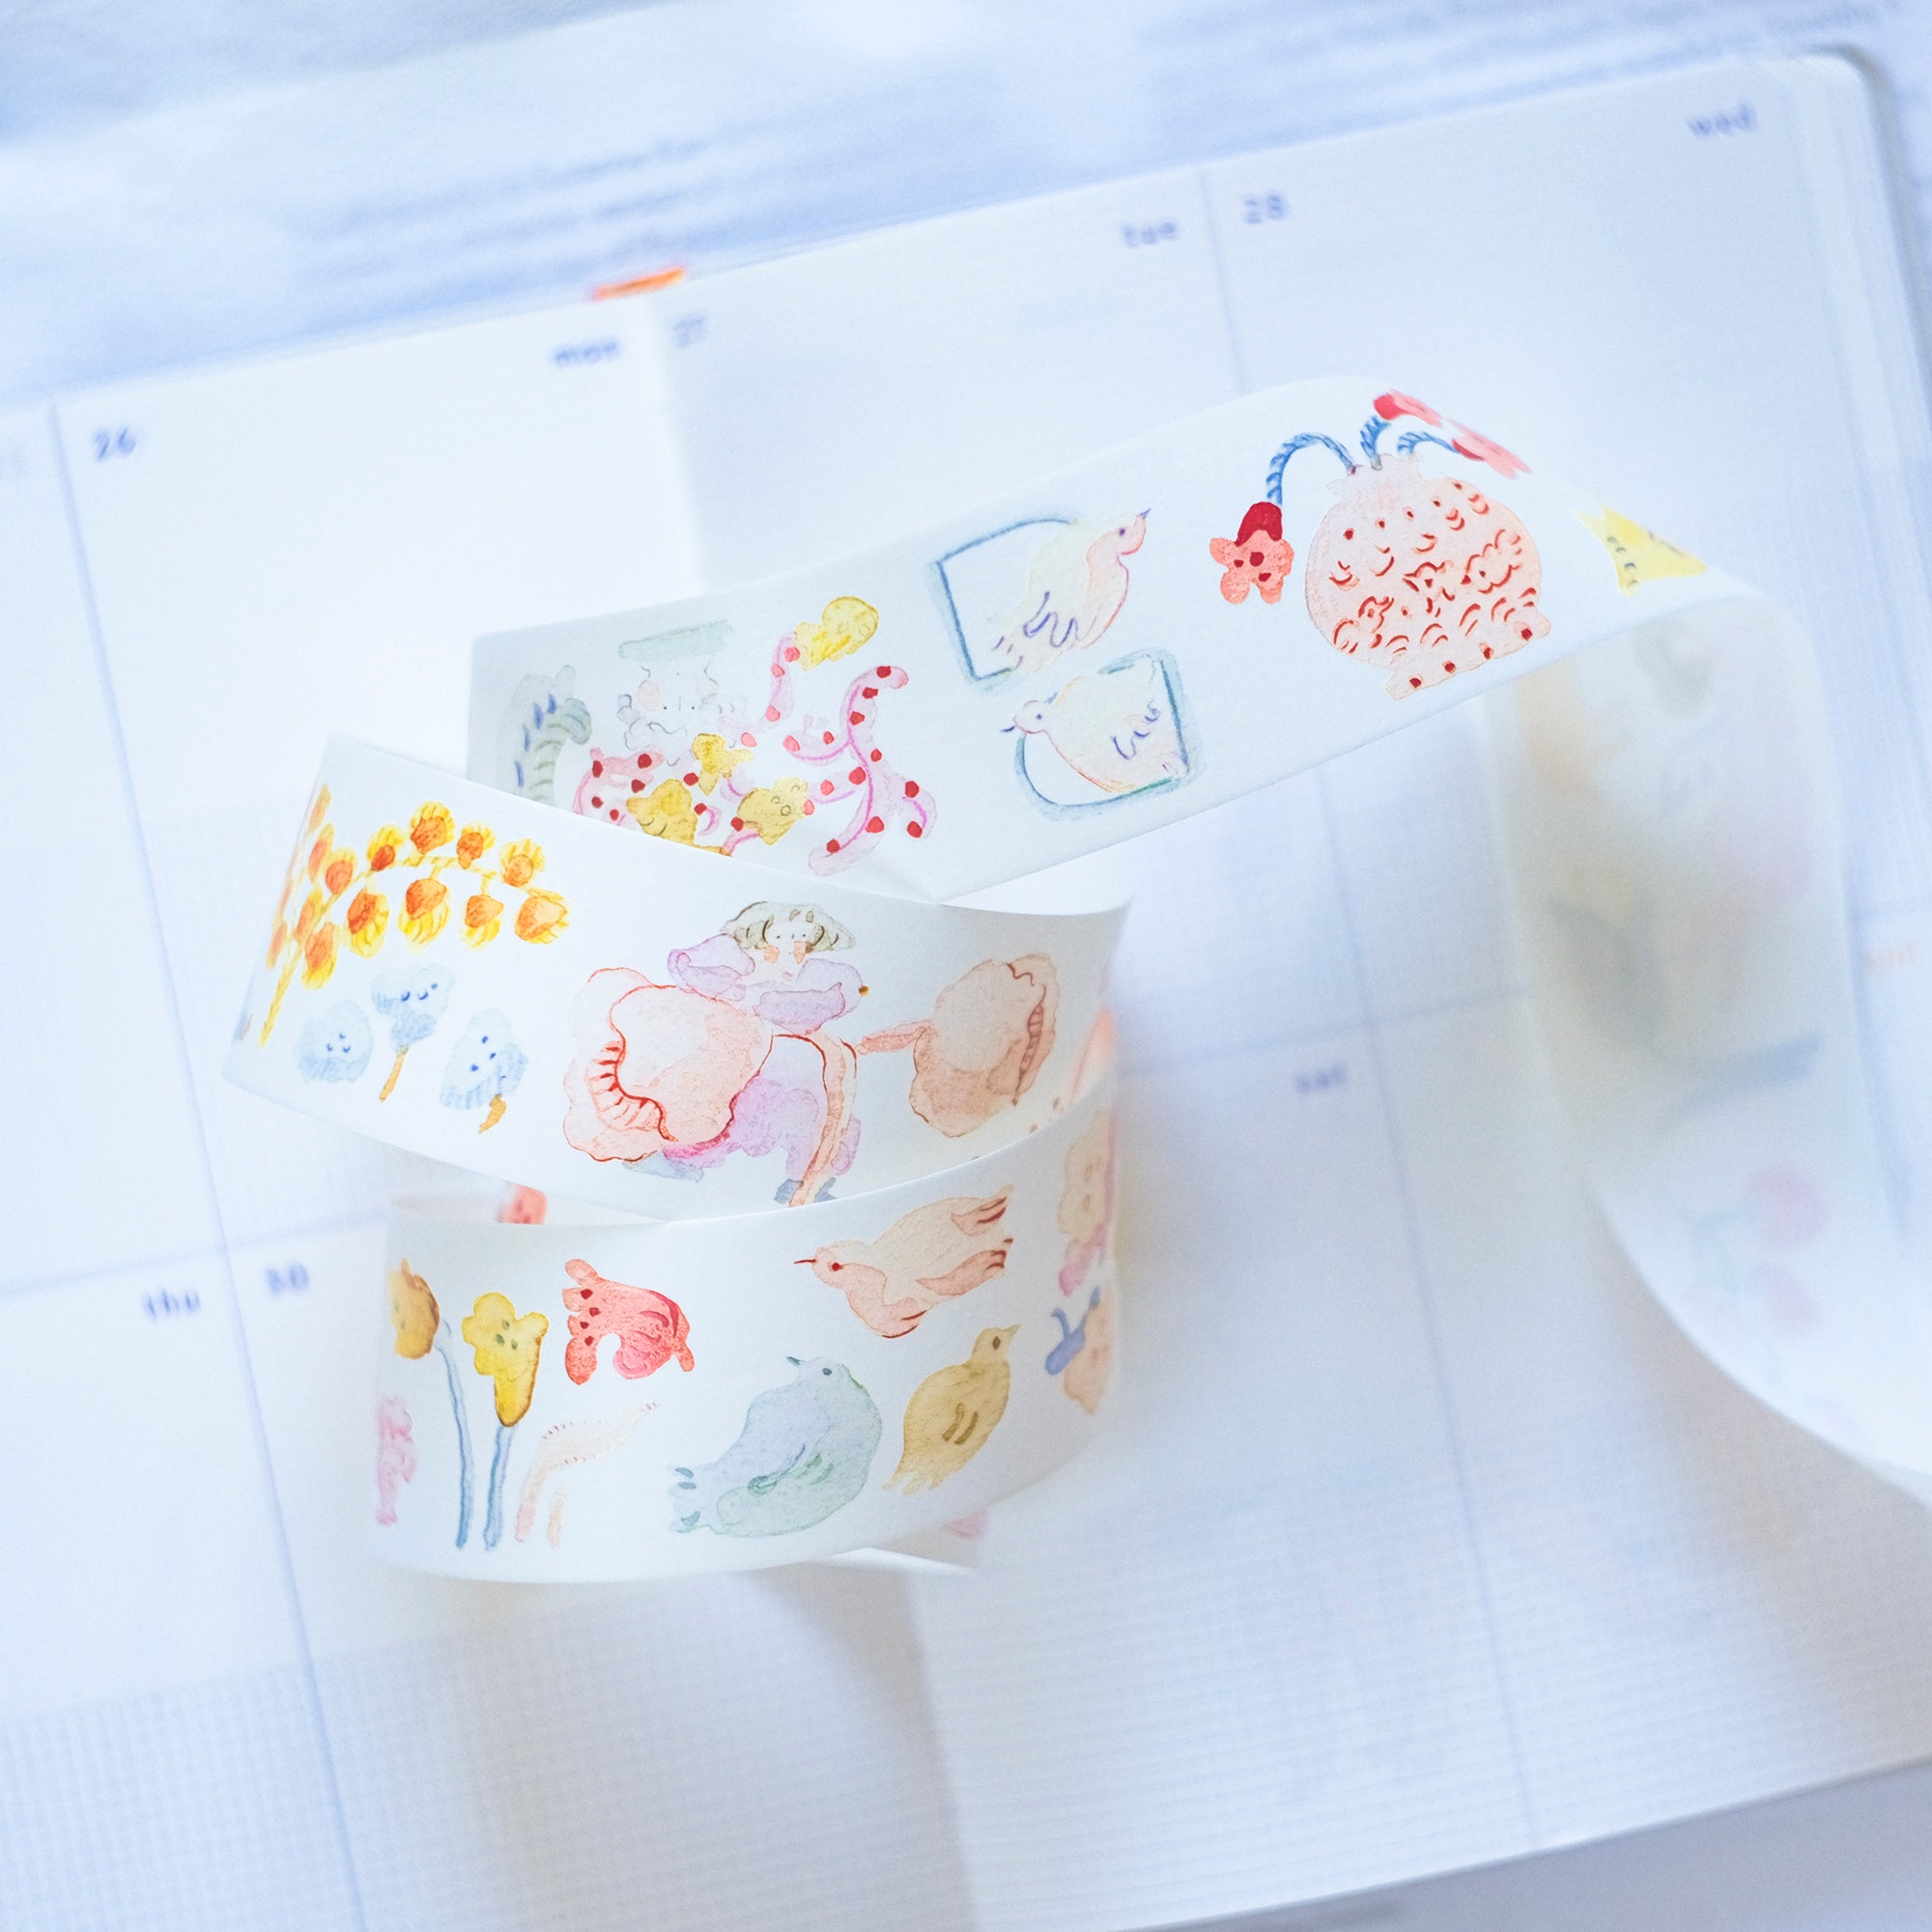 I Love Bubble Tea Washi Tape. Cute Washi Crafting Tape